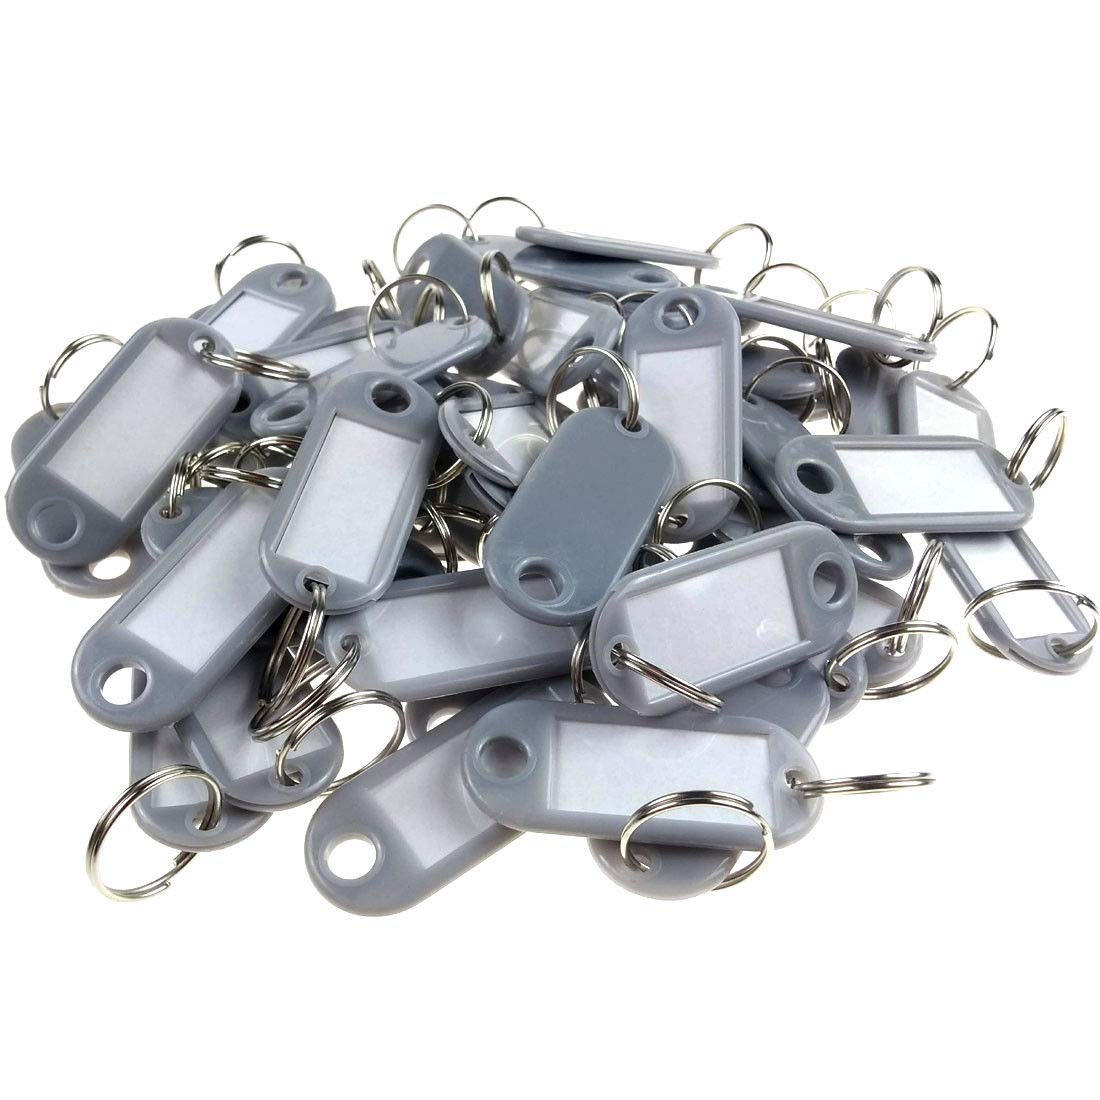 Wisplast 200 Stück Schlüsselschilder Schlüsselanhänger zum Beschriften in Grau